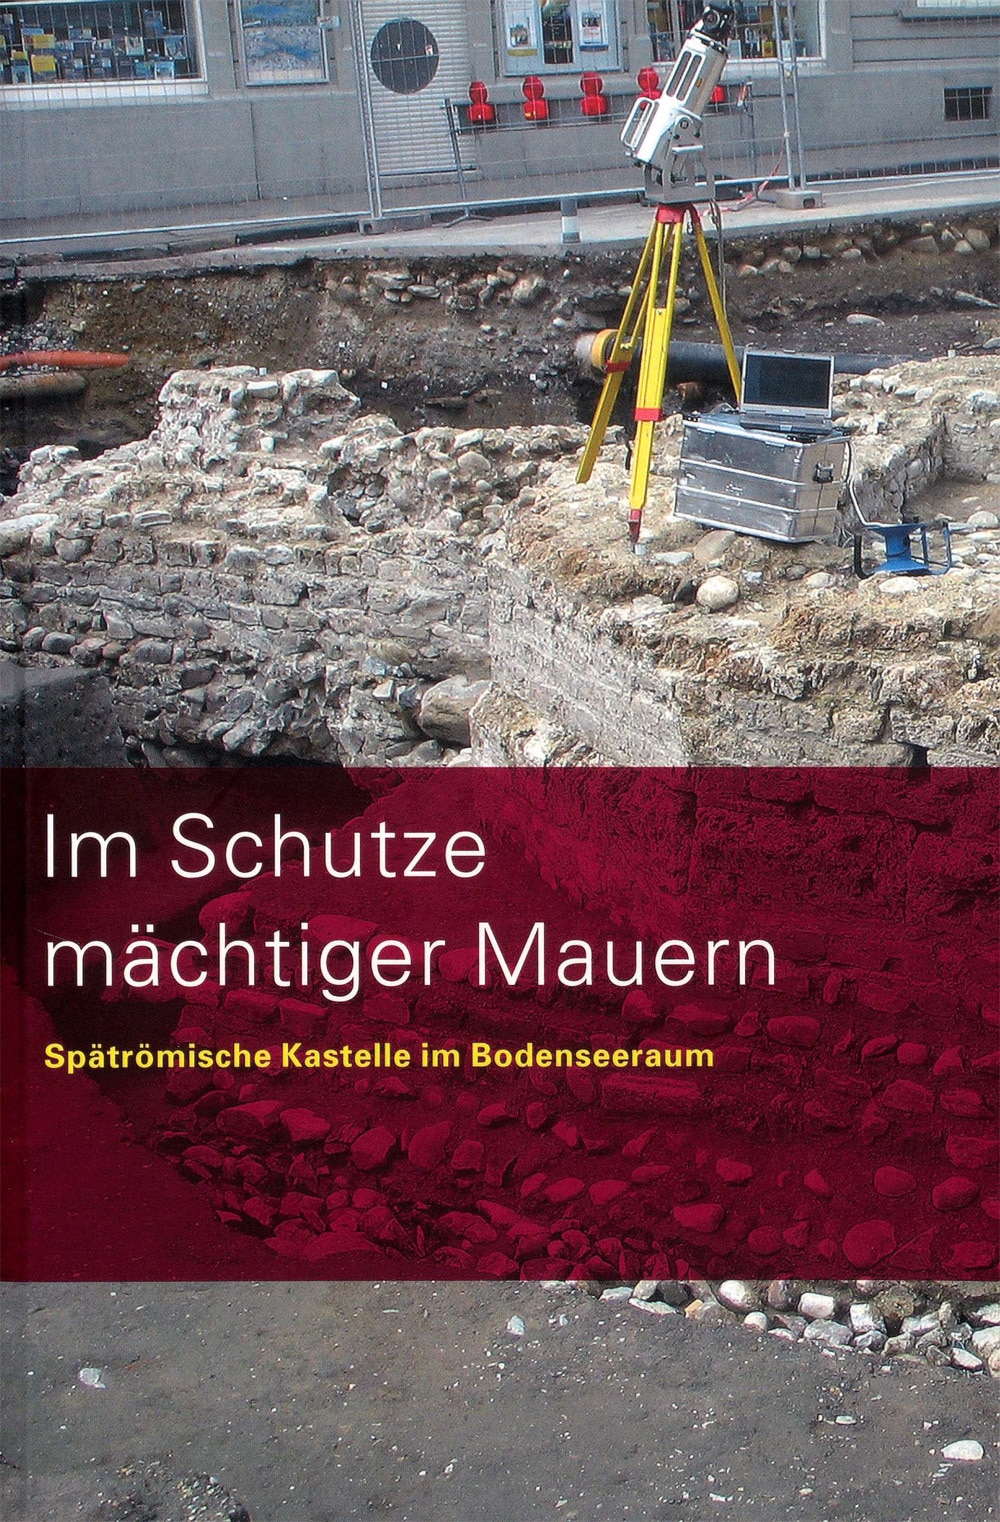 Katalog_Im_Schutze_mächtiger_Mauern_Titelseite.jpg